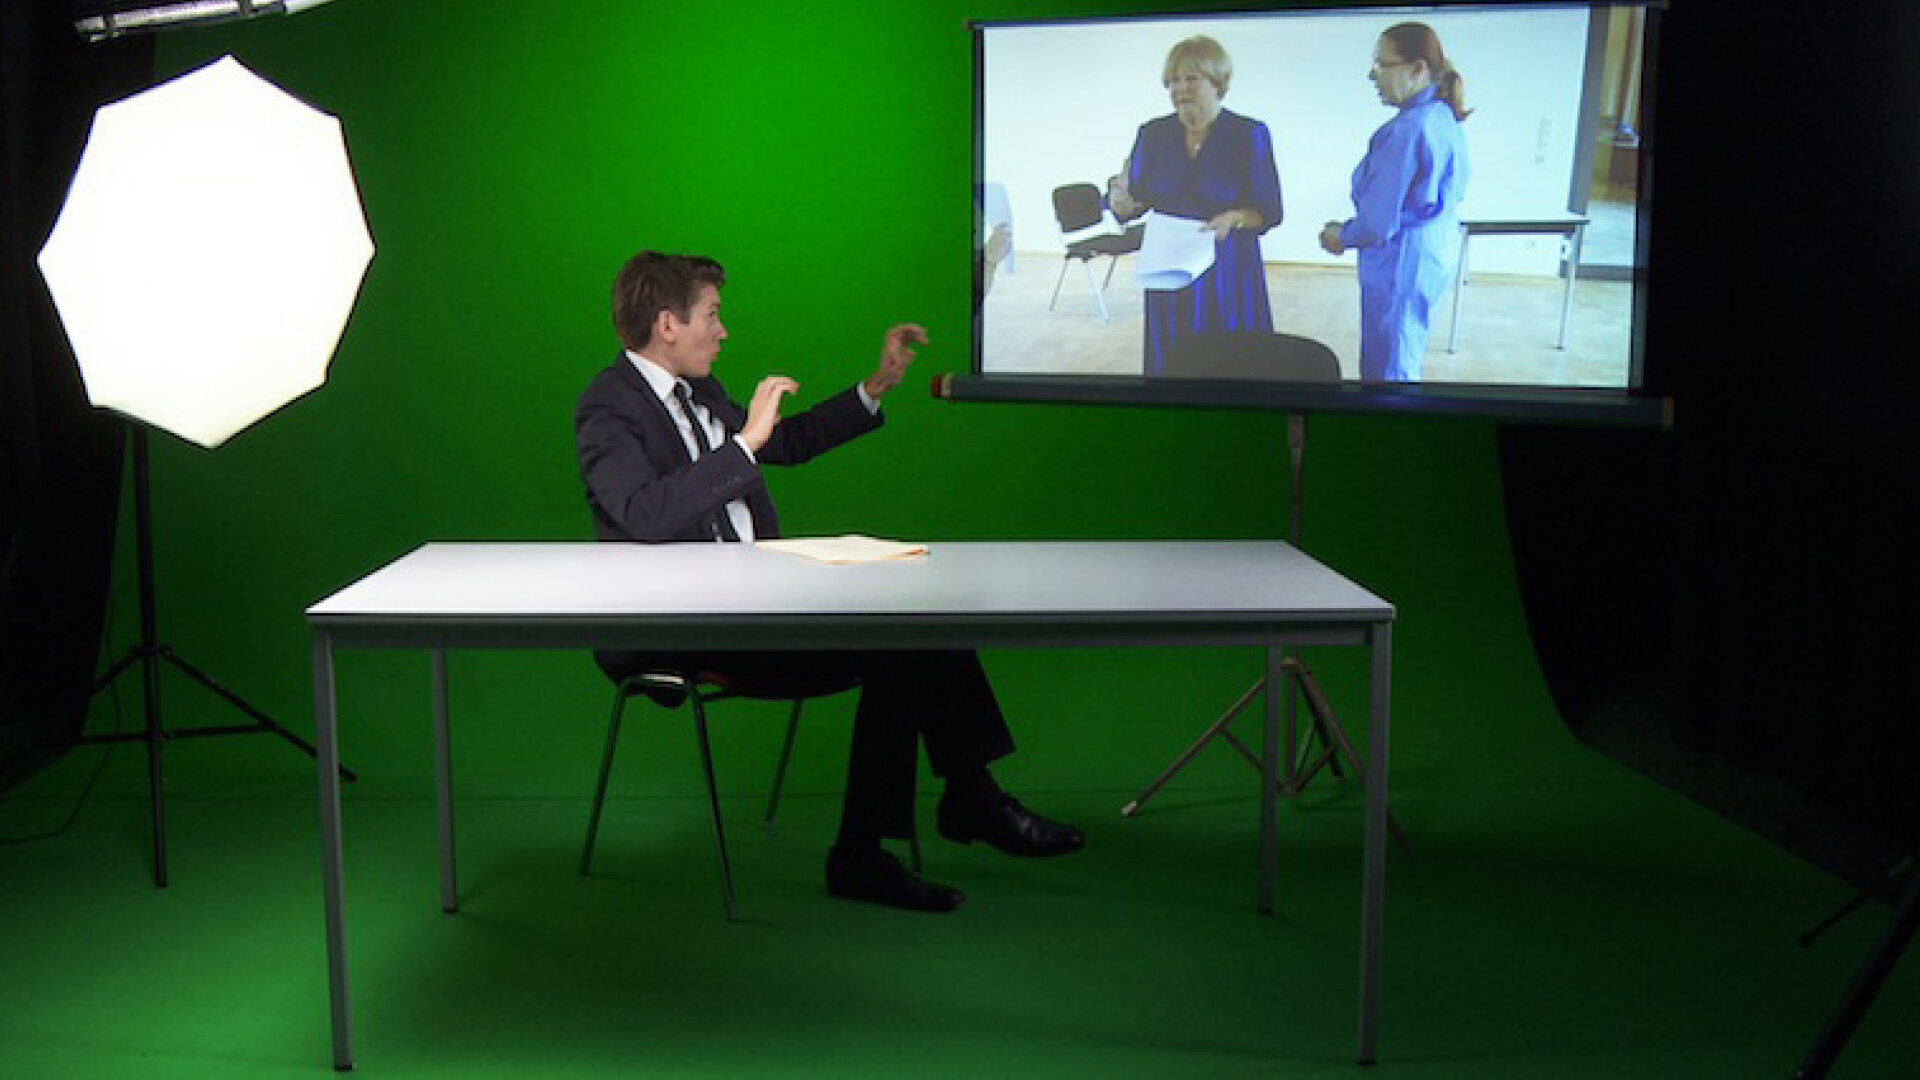 Kerstin Honeit, TALKING BUSINESS, Split Screen Video, 13:00 min, HD, 2014/15